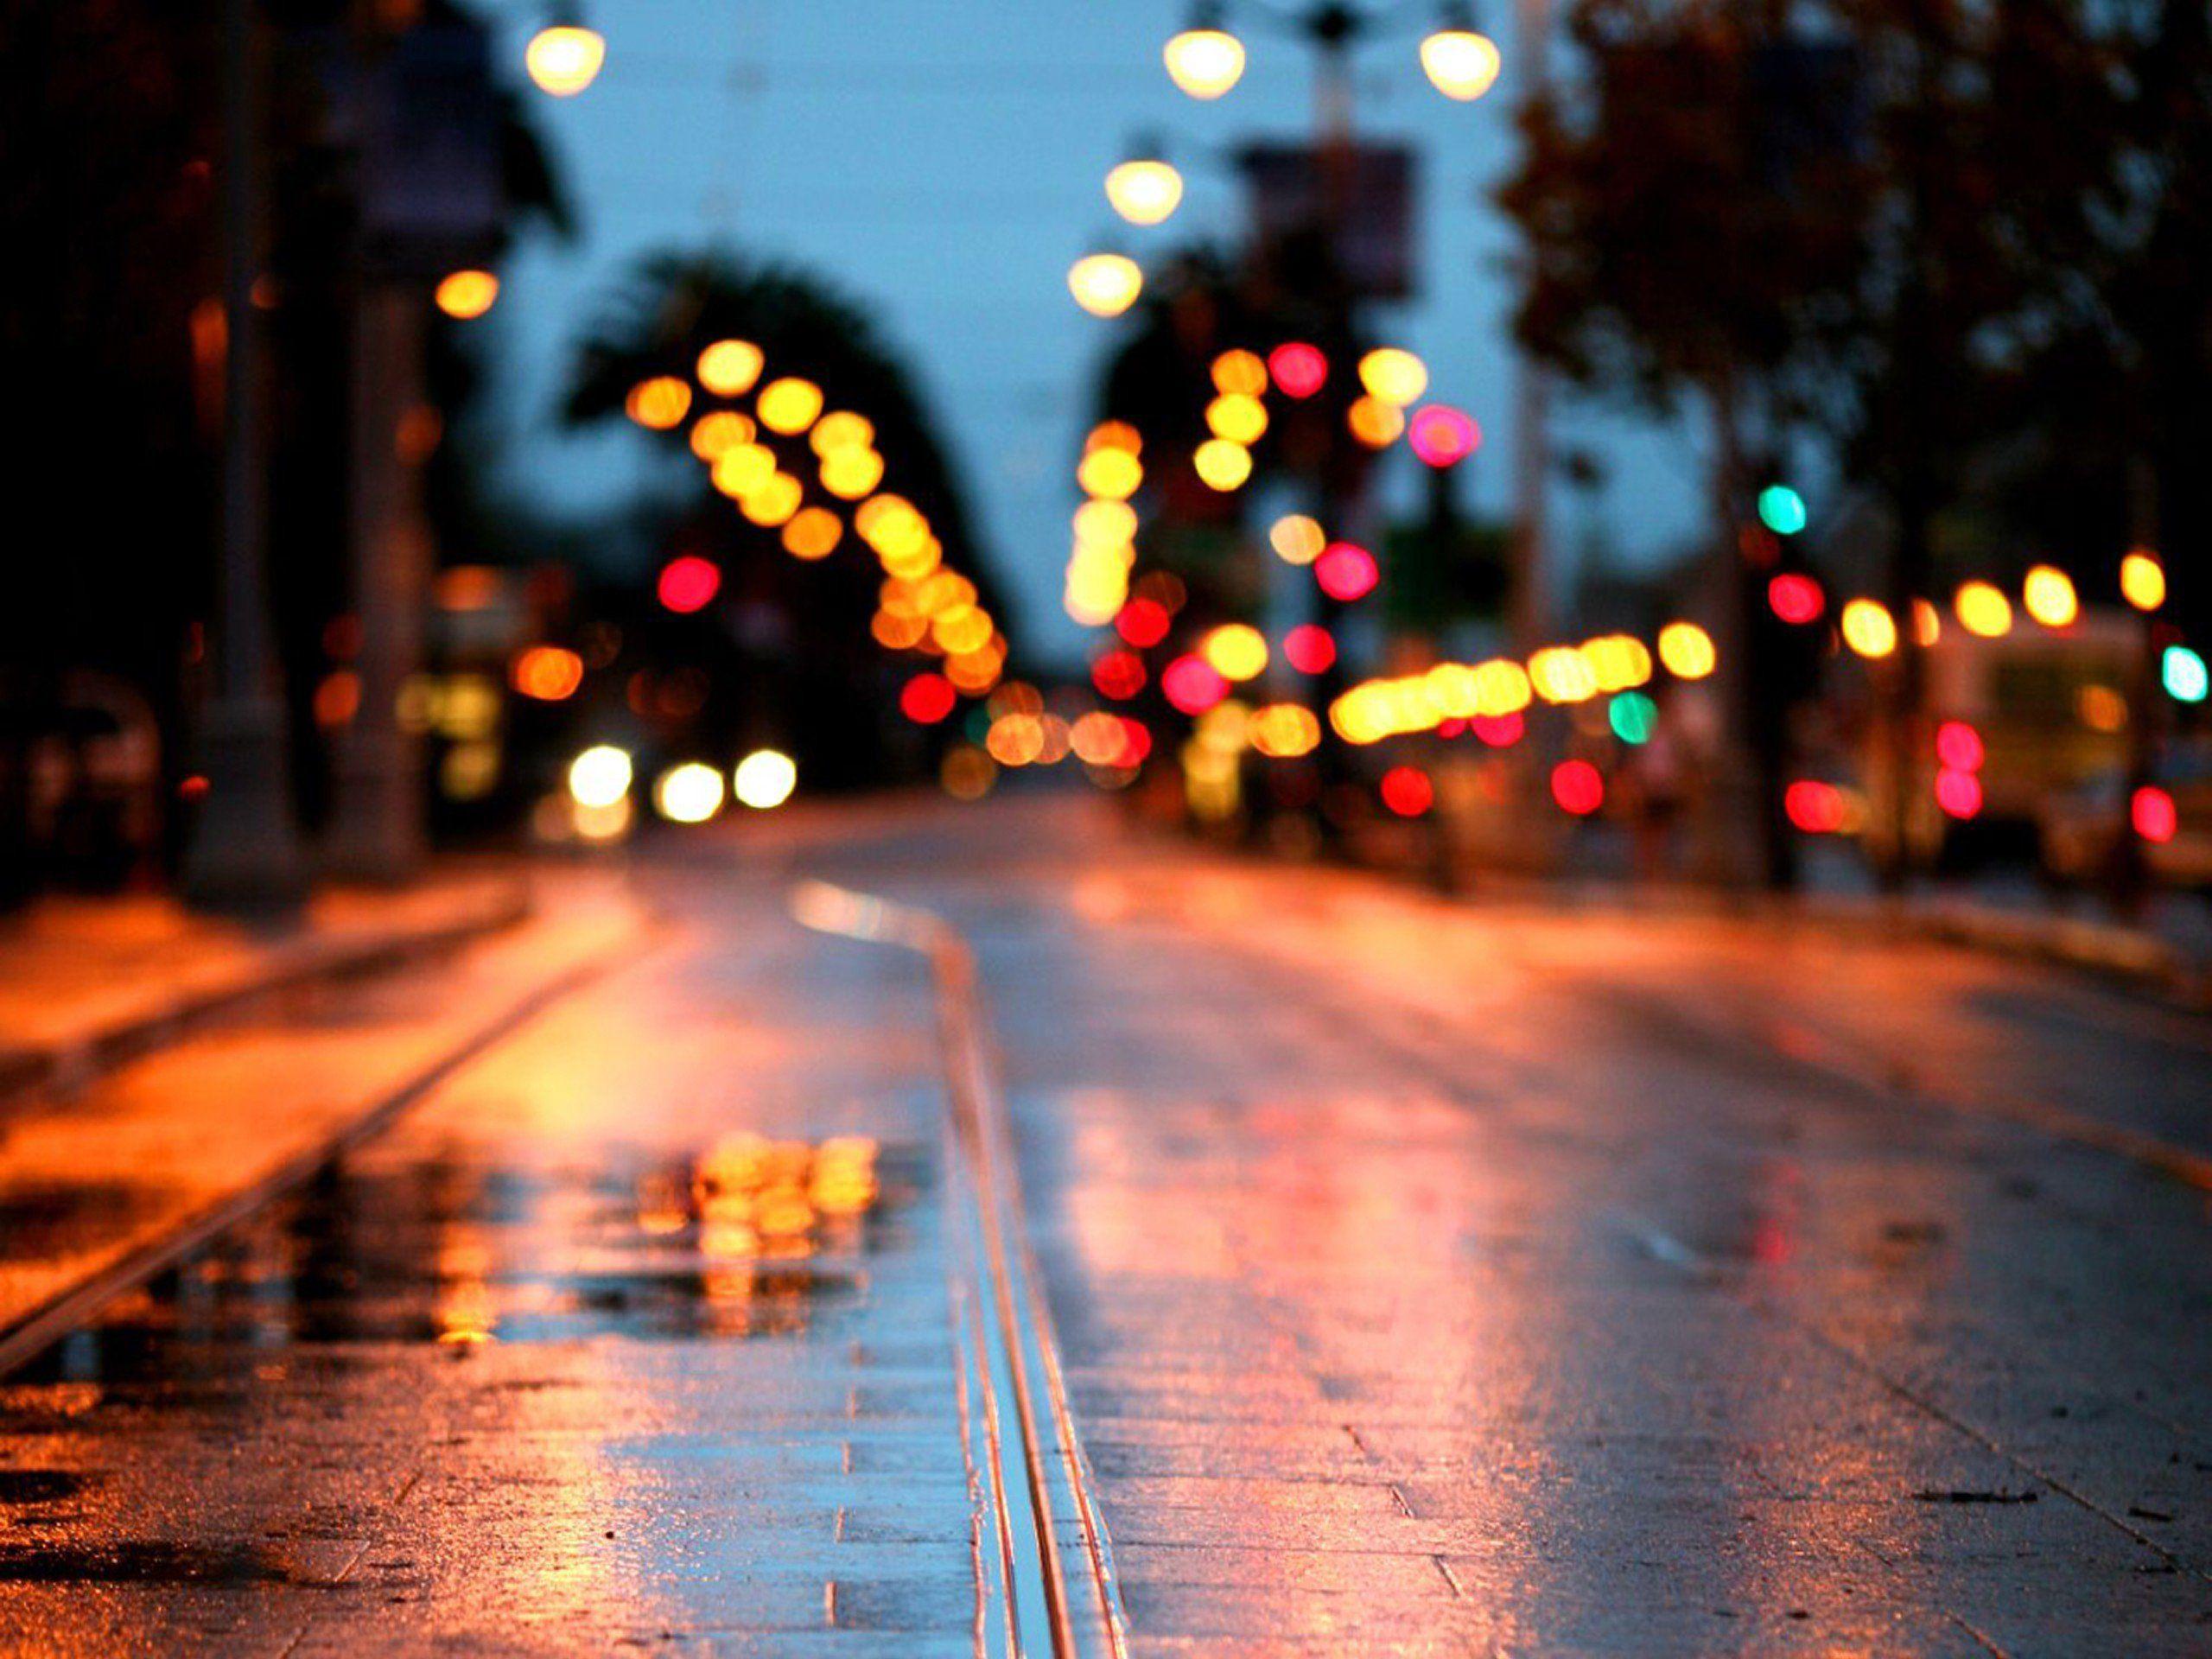 Rainy City At Night Wallpapers - Top Free Rainy City At Night